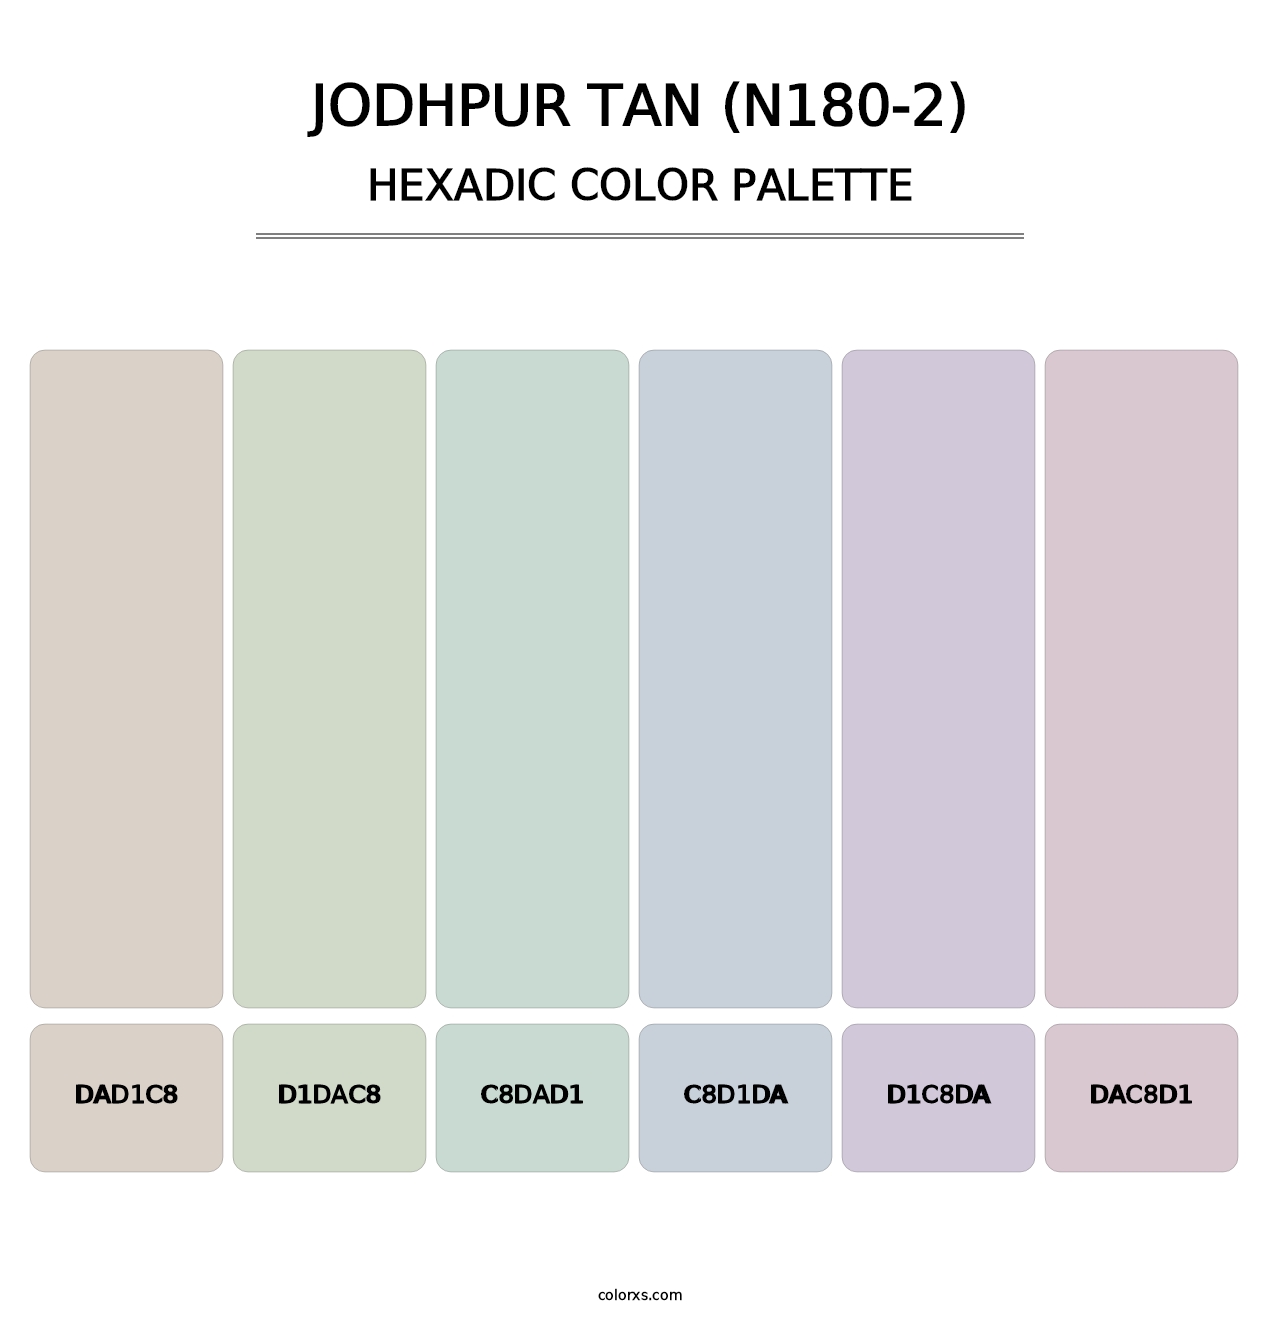 Jodhpur Tan (N180-2) - Hexadic Color Palette